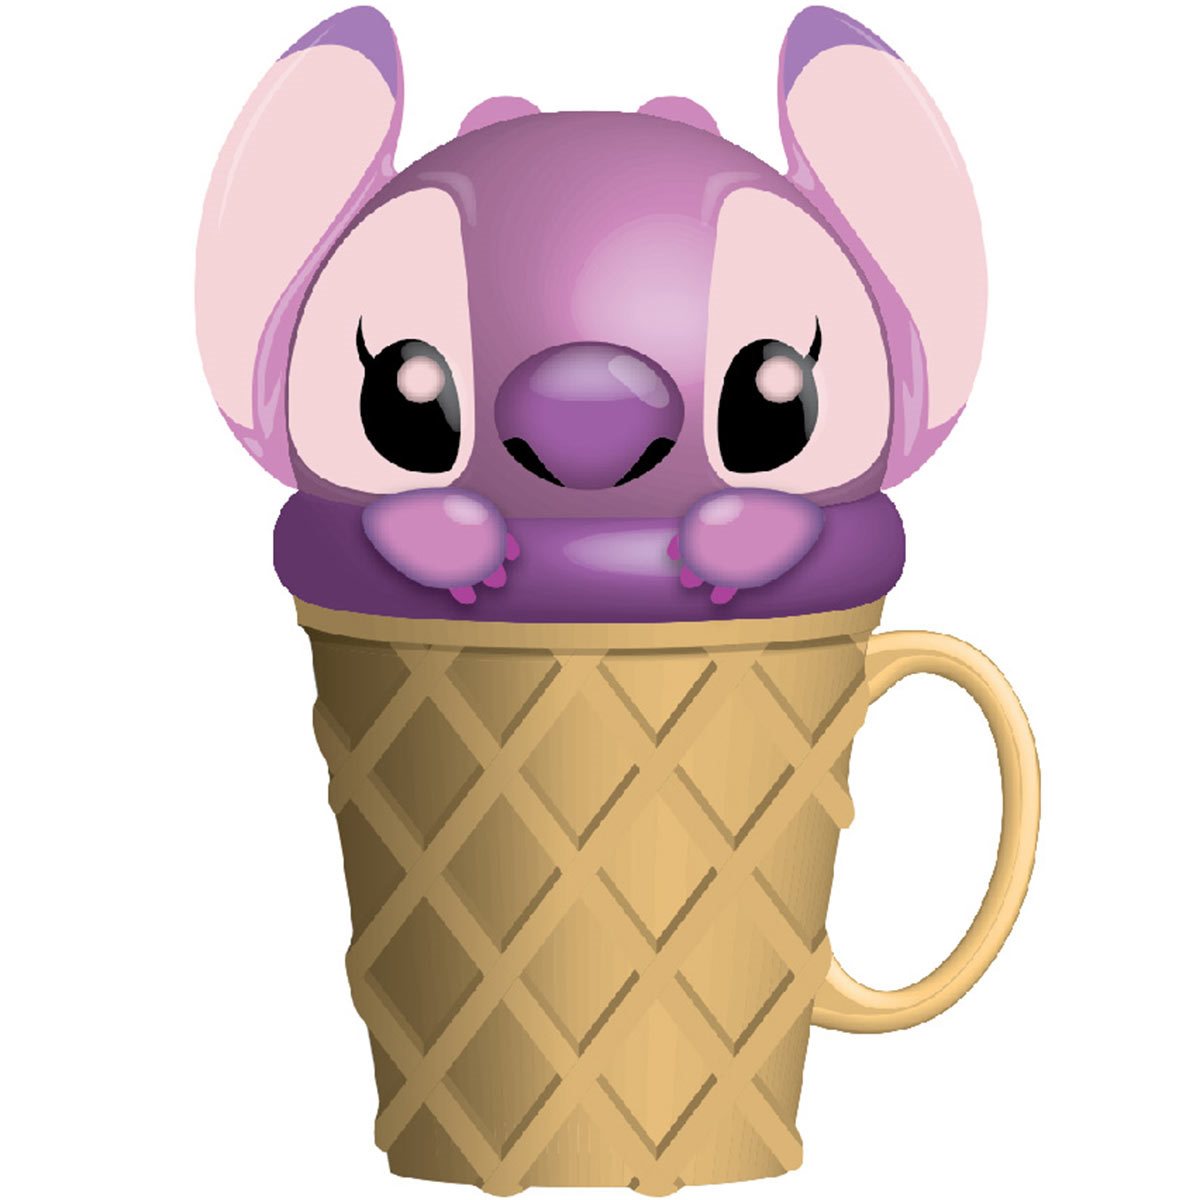 Ice Cream Stitch Lilo & Stitch Pin | Redbubble